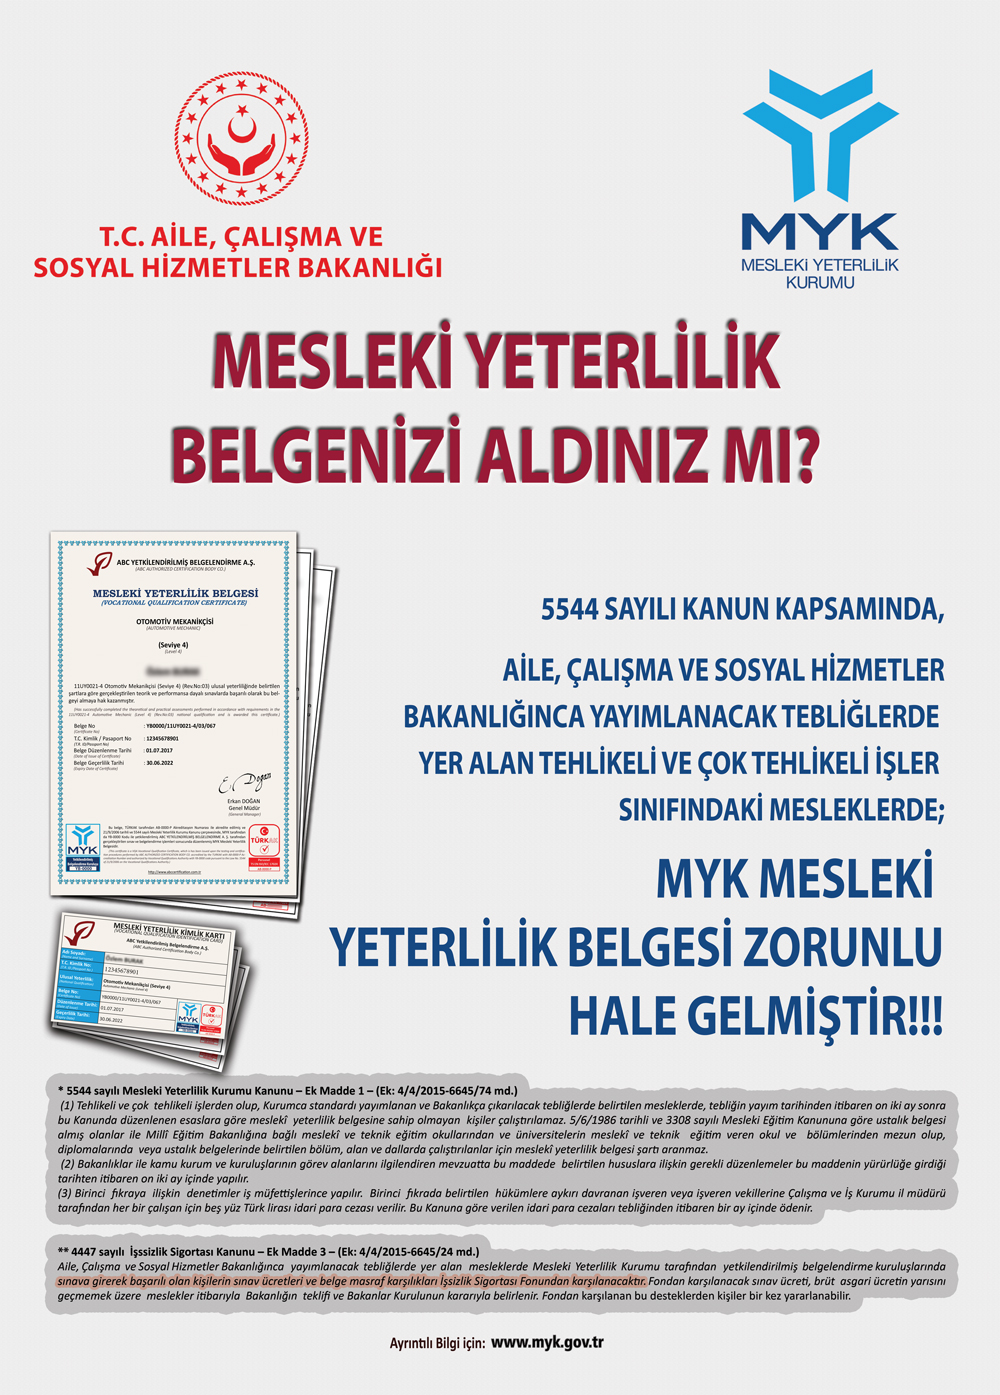 Myk Diyarbakır Mesleki Yeterlilik Belgesi 05422927619